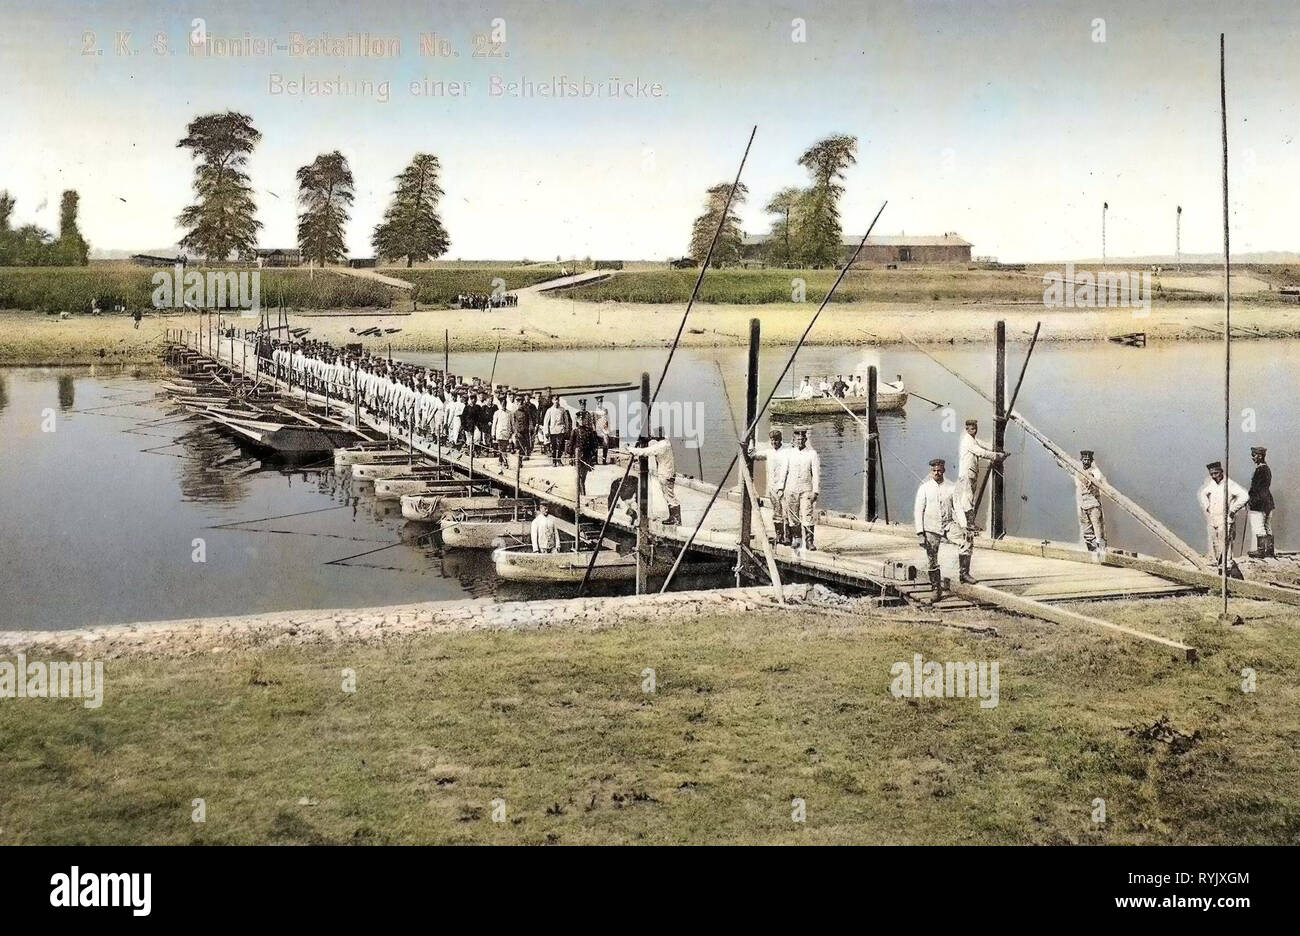 Bridges in Riesa, Temporary bridges, Buildings in Riesa, Elbe in Riesa, 1912, Landkreis Meißen, Riesa, Belastung einer Behelfsbrücke, Germany Stock Photo